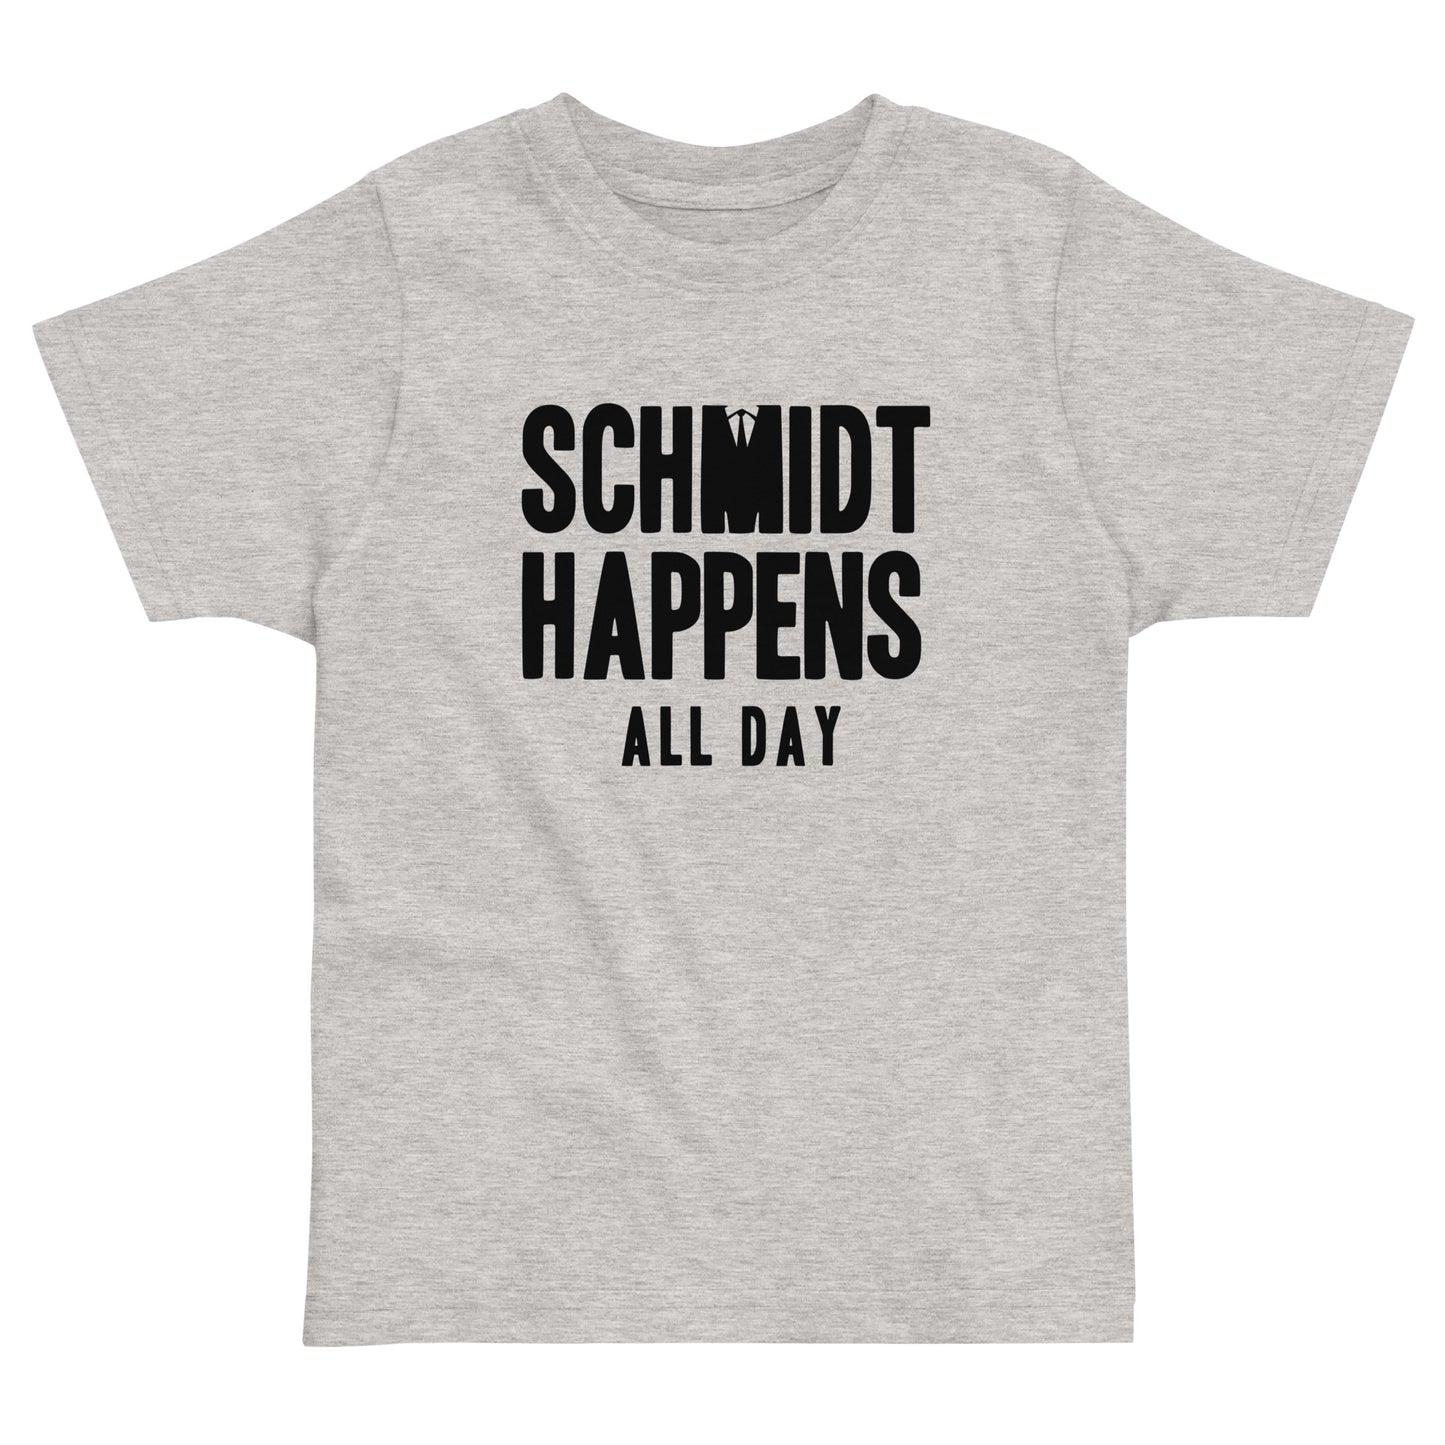 Schmidt Happens All Day Kid's Toddler Tee